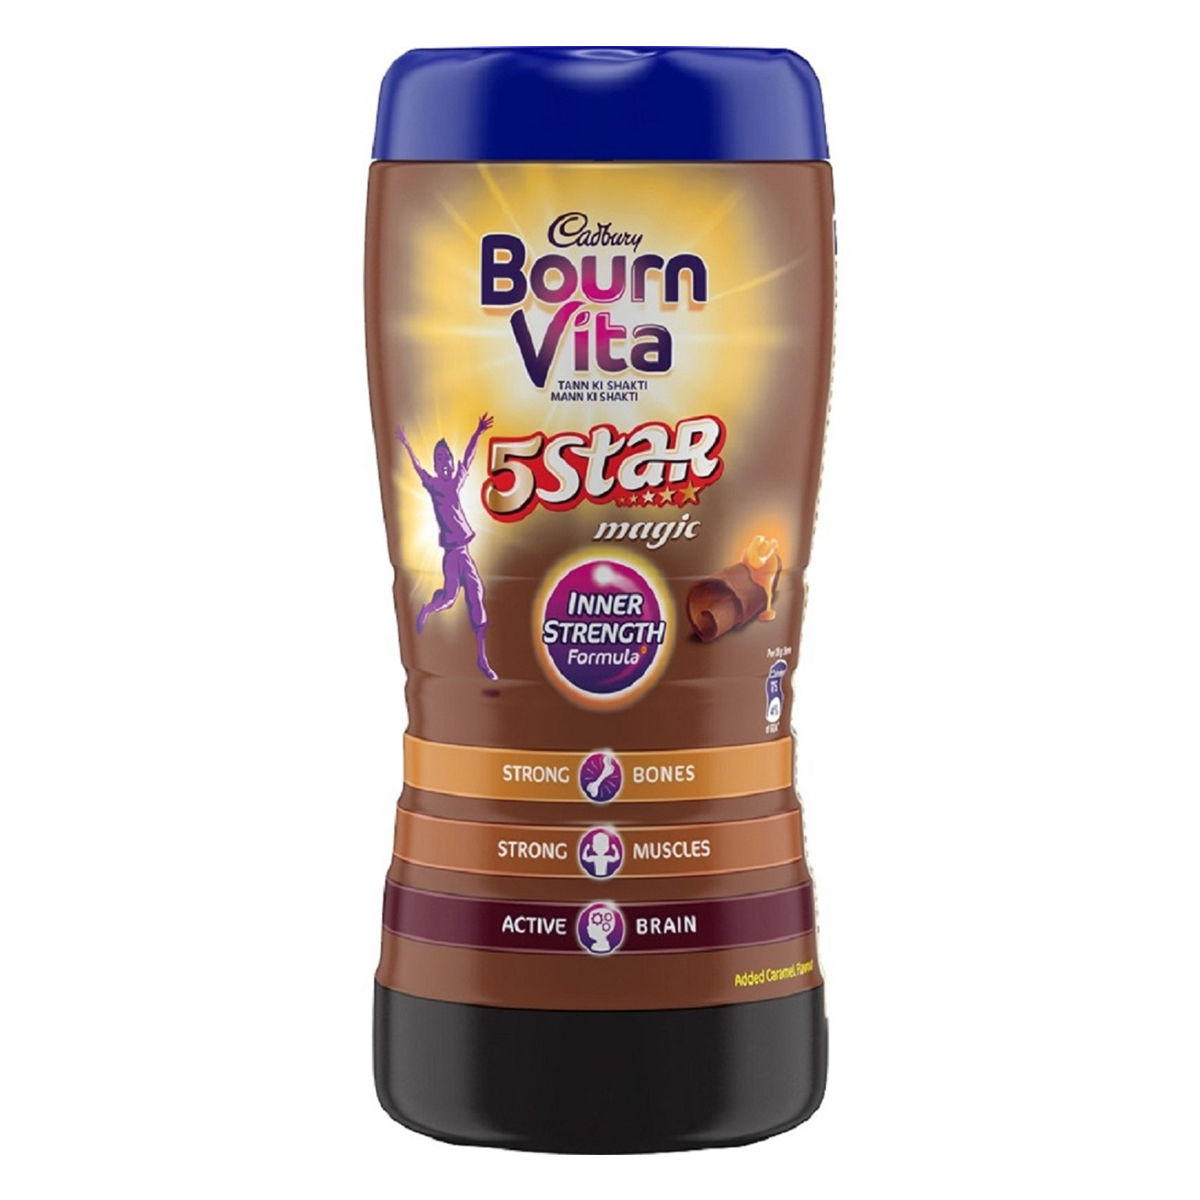 Buy Cadbury Bournvita 5 Star Magic Health & Nutrition Drink Powder, 500 gm Jar Online